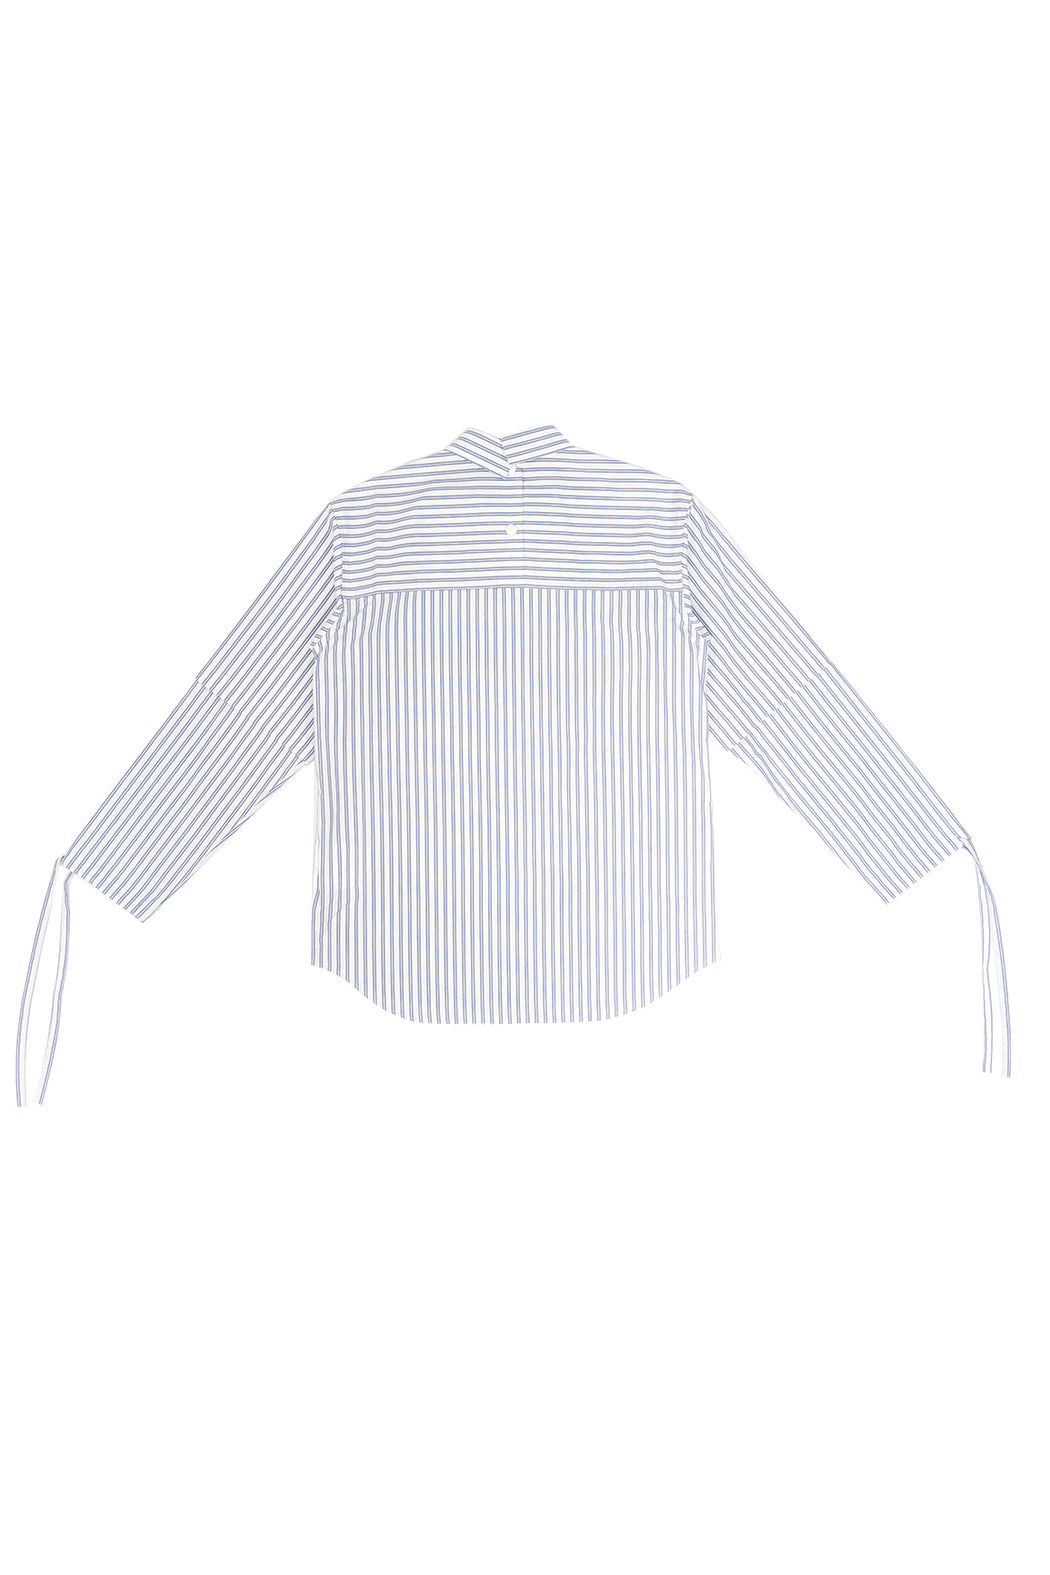 Kudos Soduk Double Sleeve Stripe Shirt - White